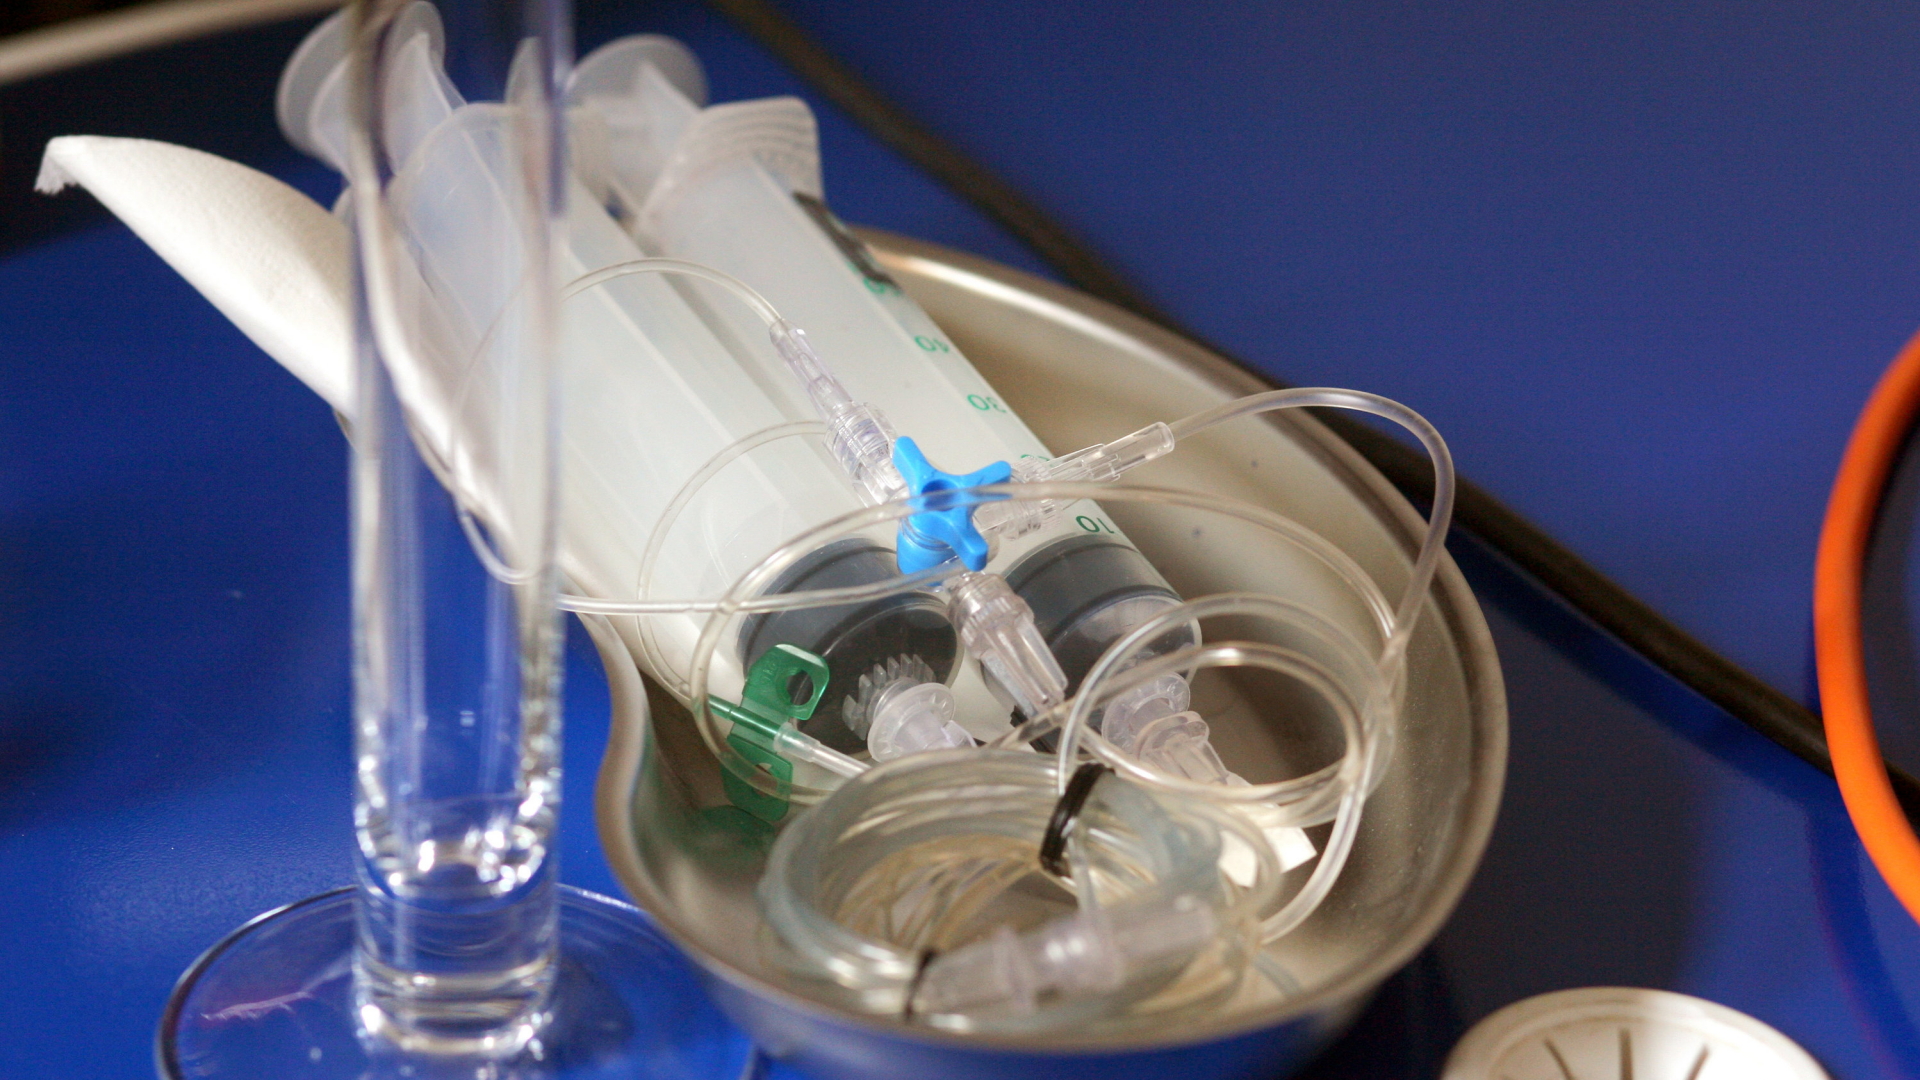 Auf einer Nierenschale liegt eine Apparatur aus zwei Spritzen, mit deren Hilfe kranke, sterbewillige Patienten sich selbst eine tödliche Dosis Betäubungsmittel verabreichen können. | dpa